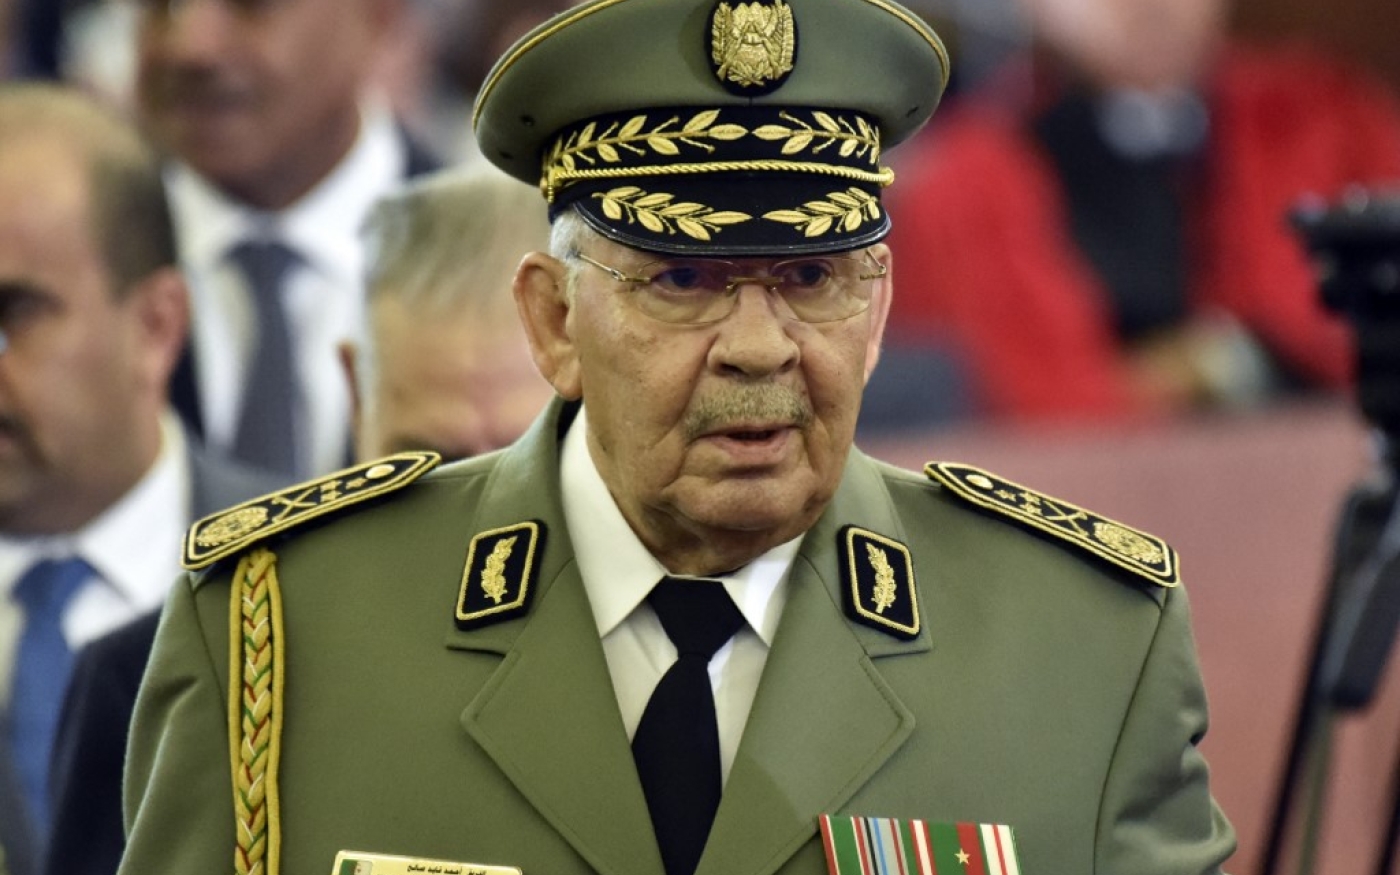 À partir de mars 2019, le général Gaïd Salah, avec l’appui de la hiérarchie de l’armée, a repris les choses en main. Il a neutralisé ses adversaires, ainsi que les hommes de pouvoir et les oligarques susceptibles de perturber ses projets (AFP/Ryad Kramdi)